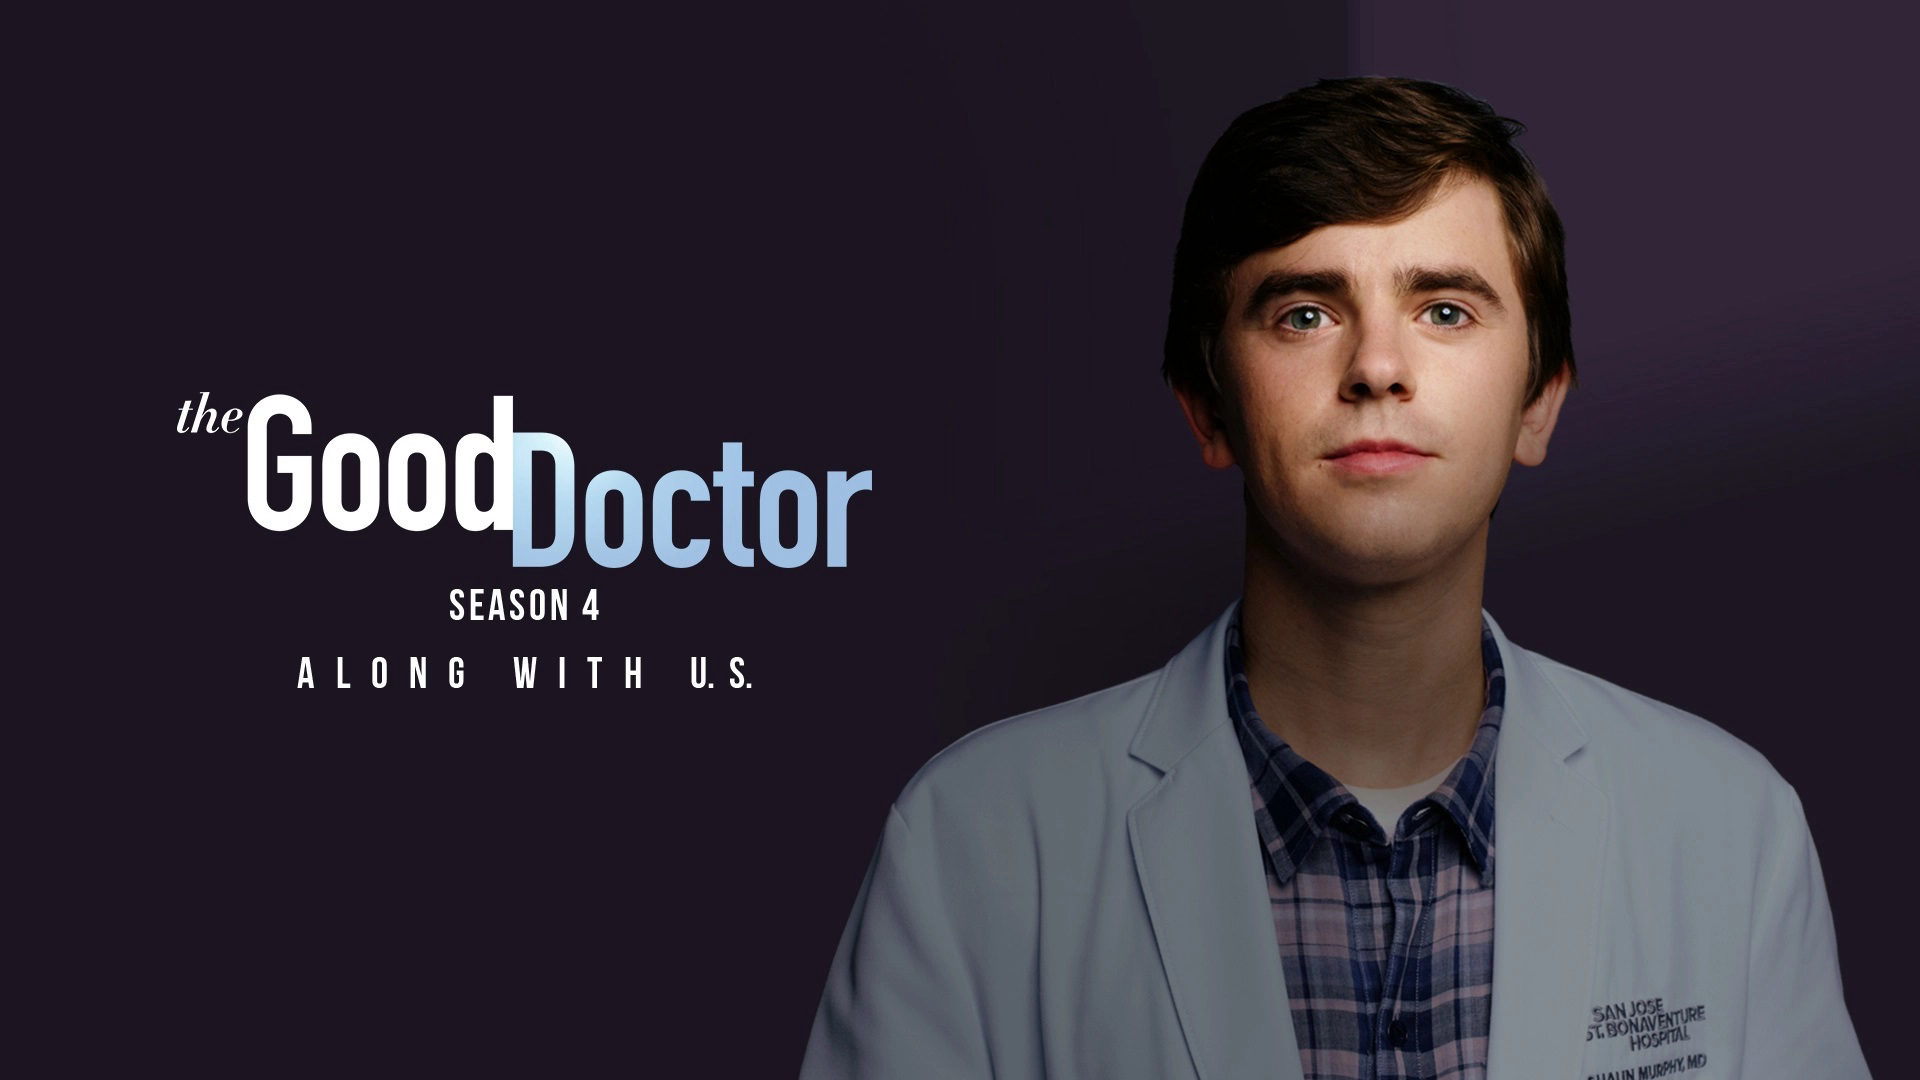 The Good Doctor (Season 4) / The Good Doctor (Season 4) (2020)